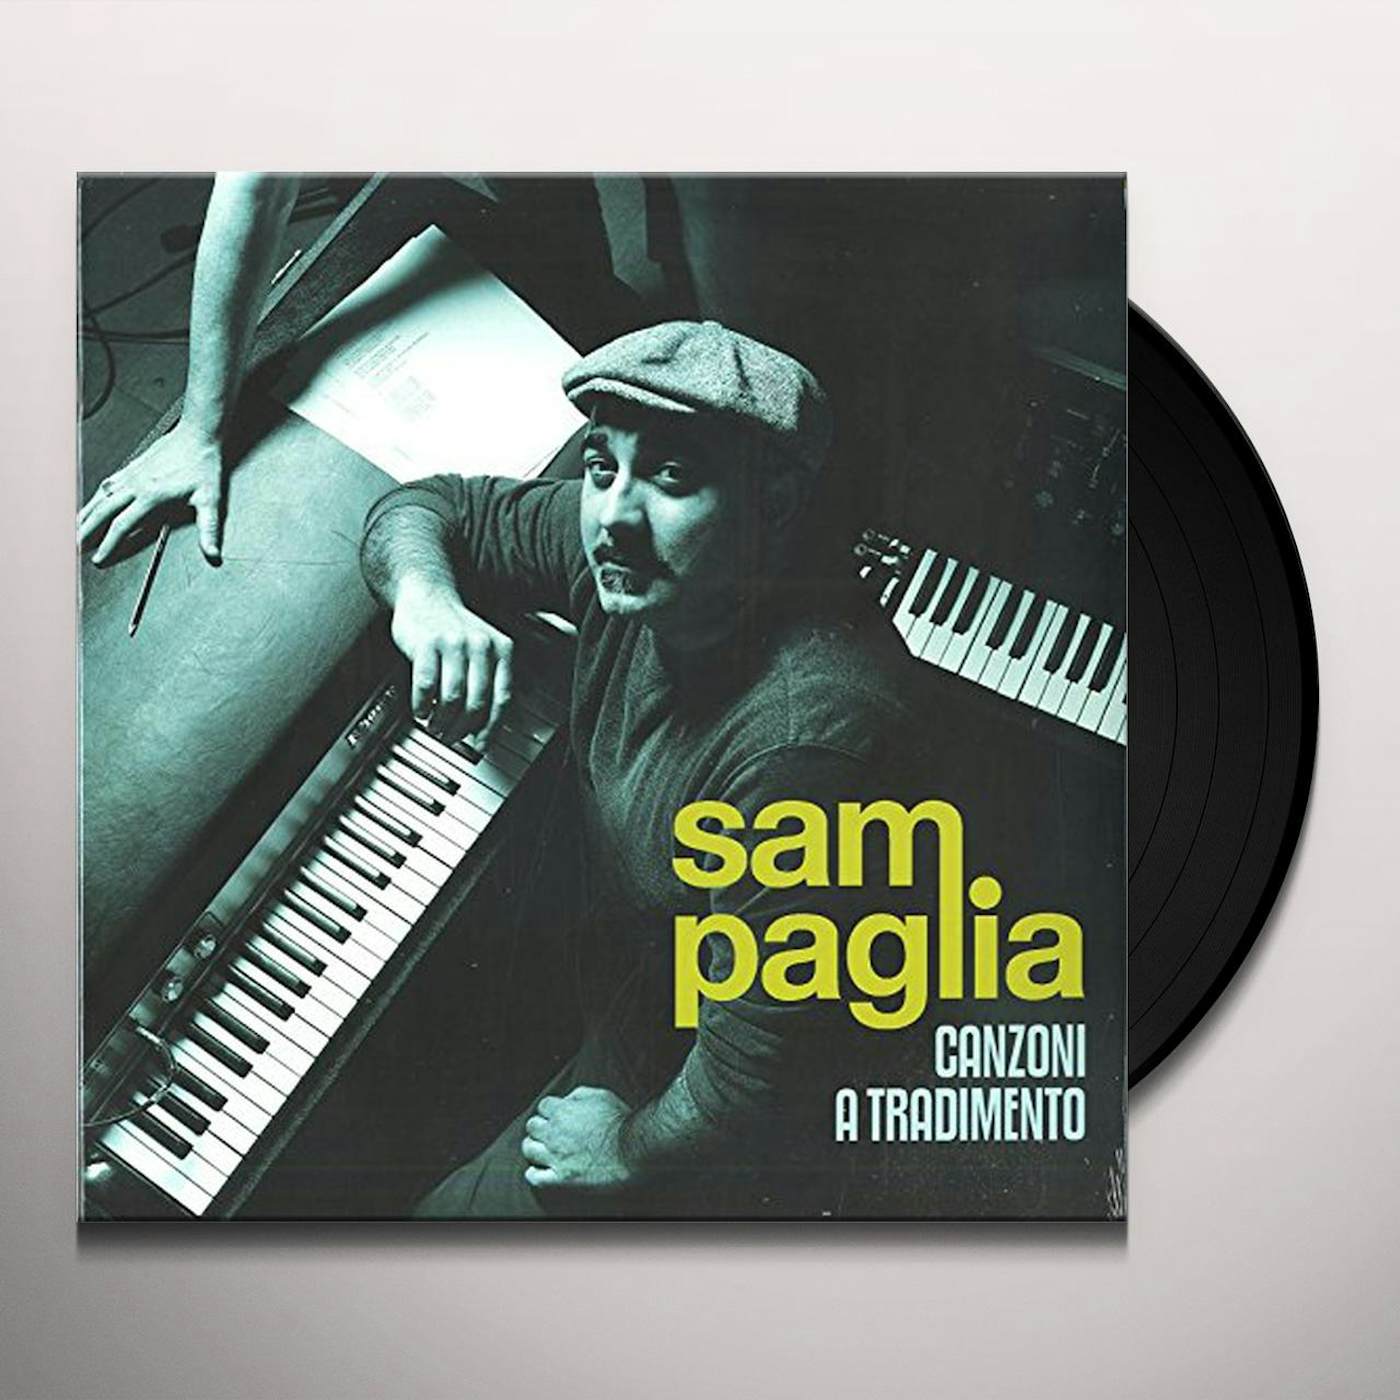 Sam Paglia Canzoni a tradimento Vinyl Record